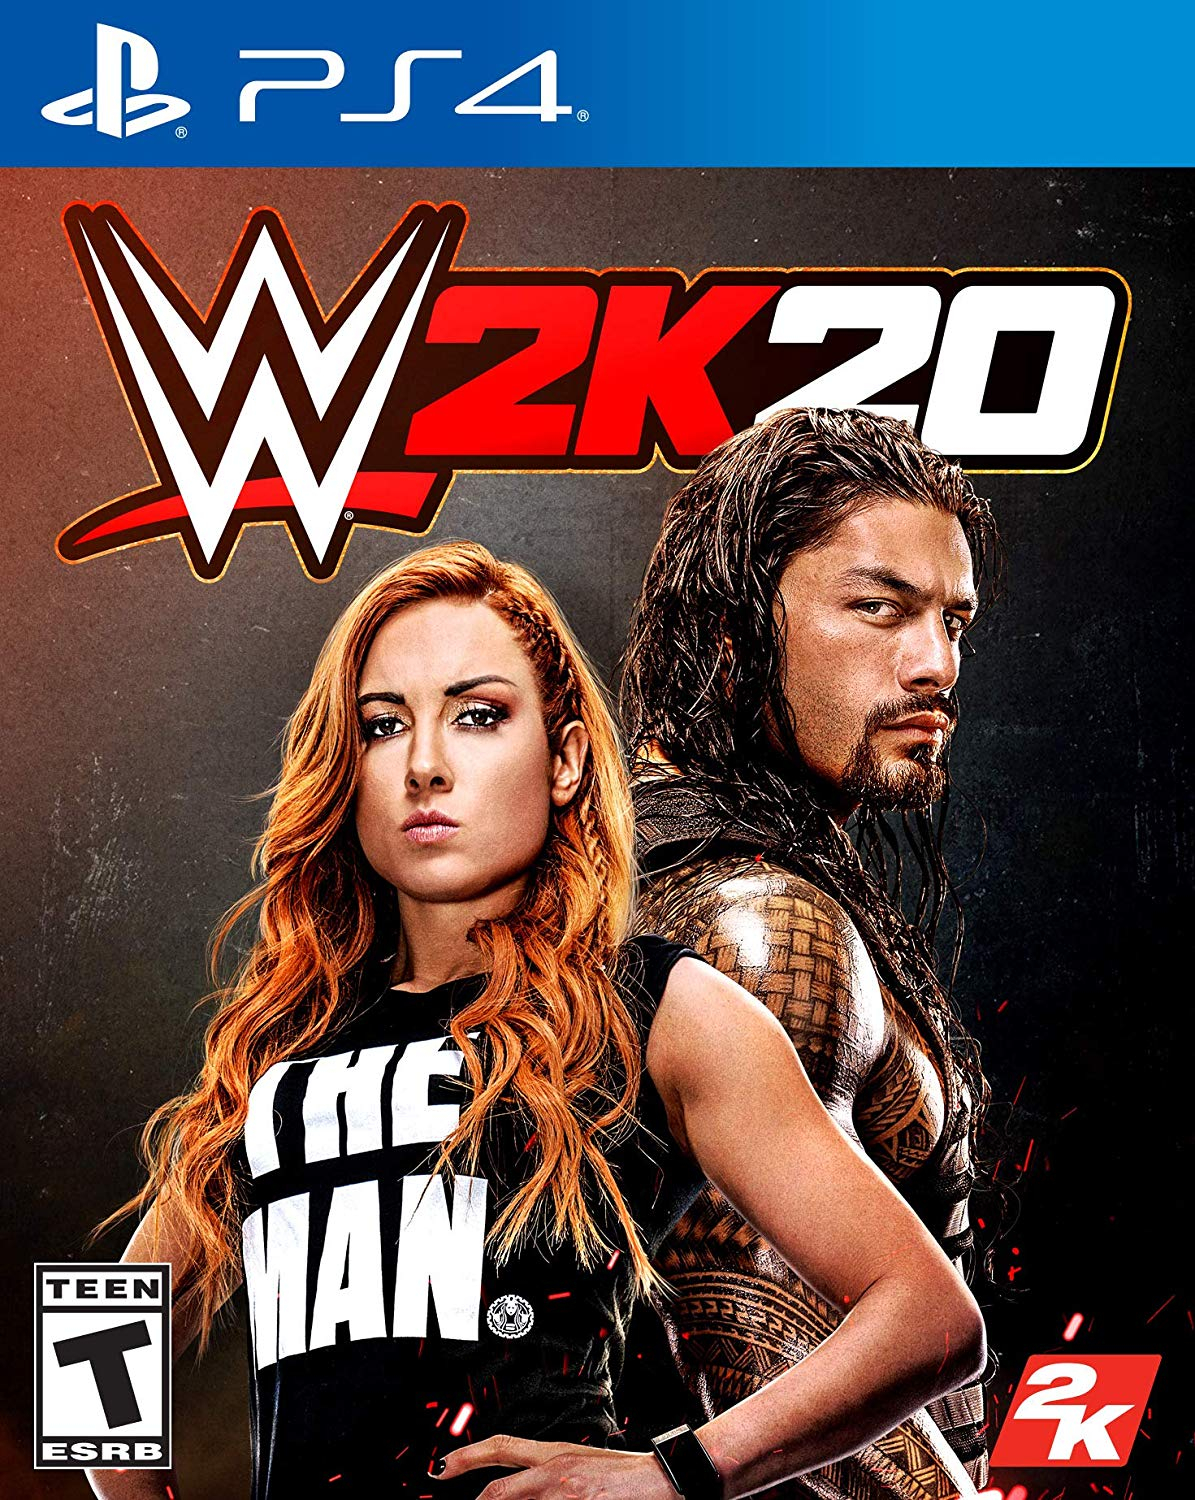 WWE 2K20 - PlayStation 4